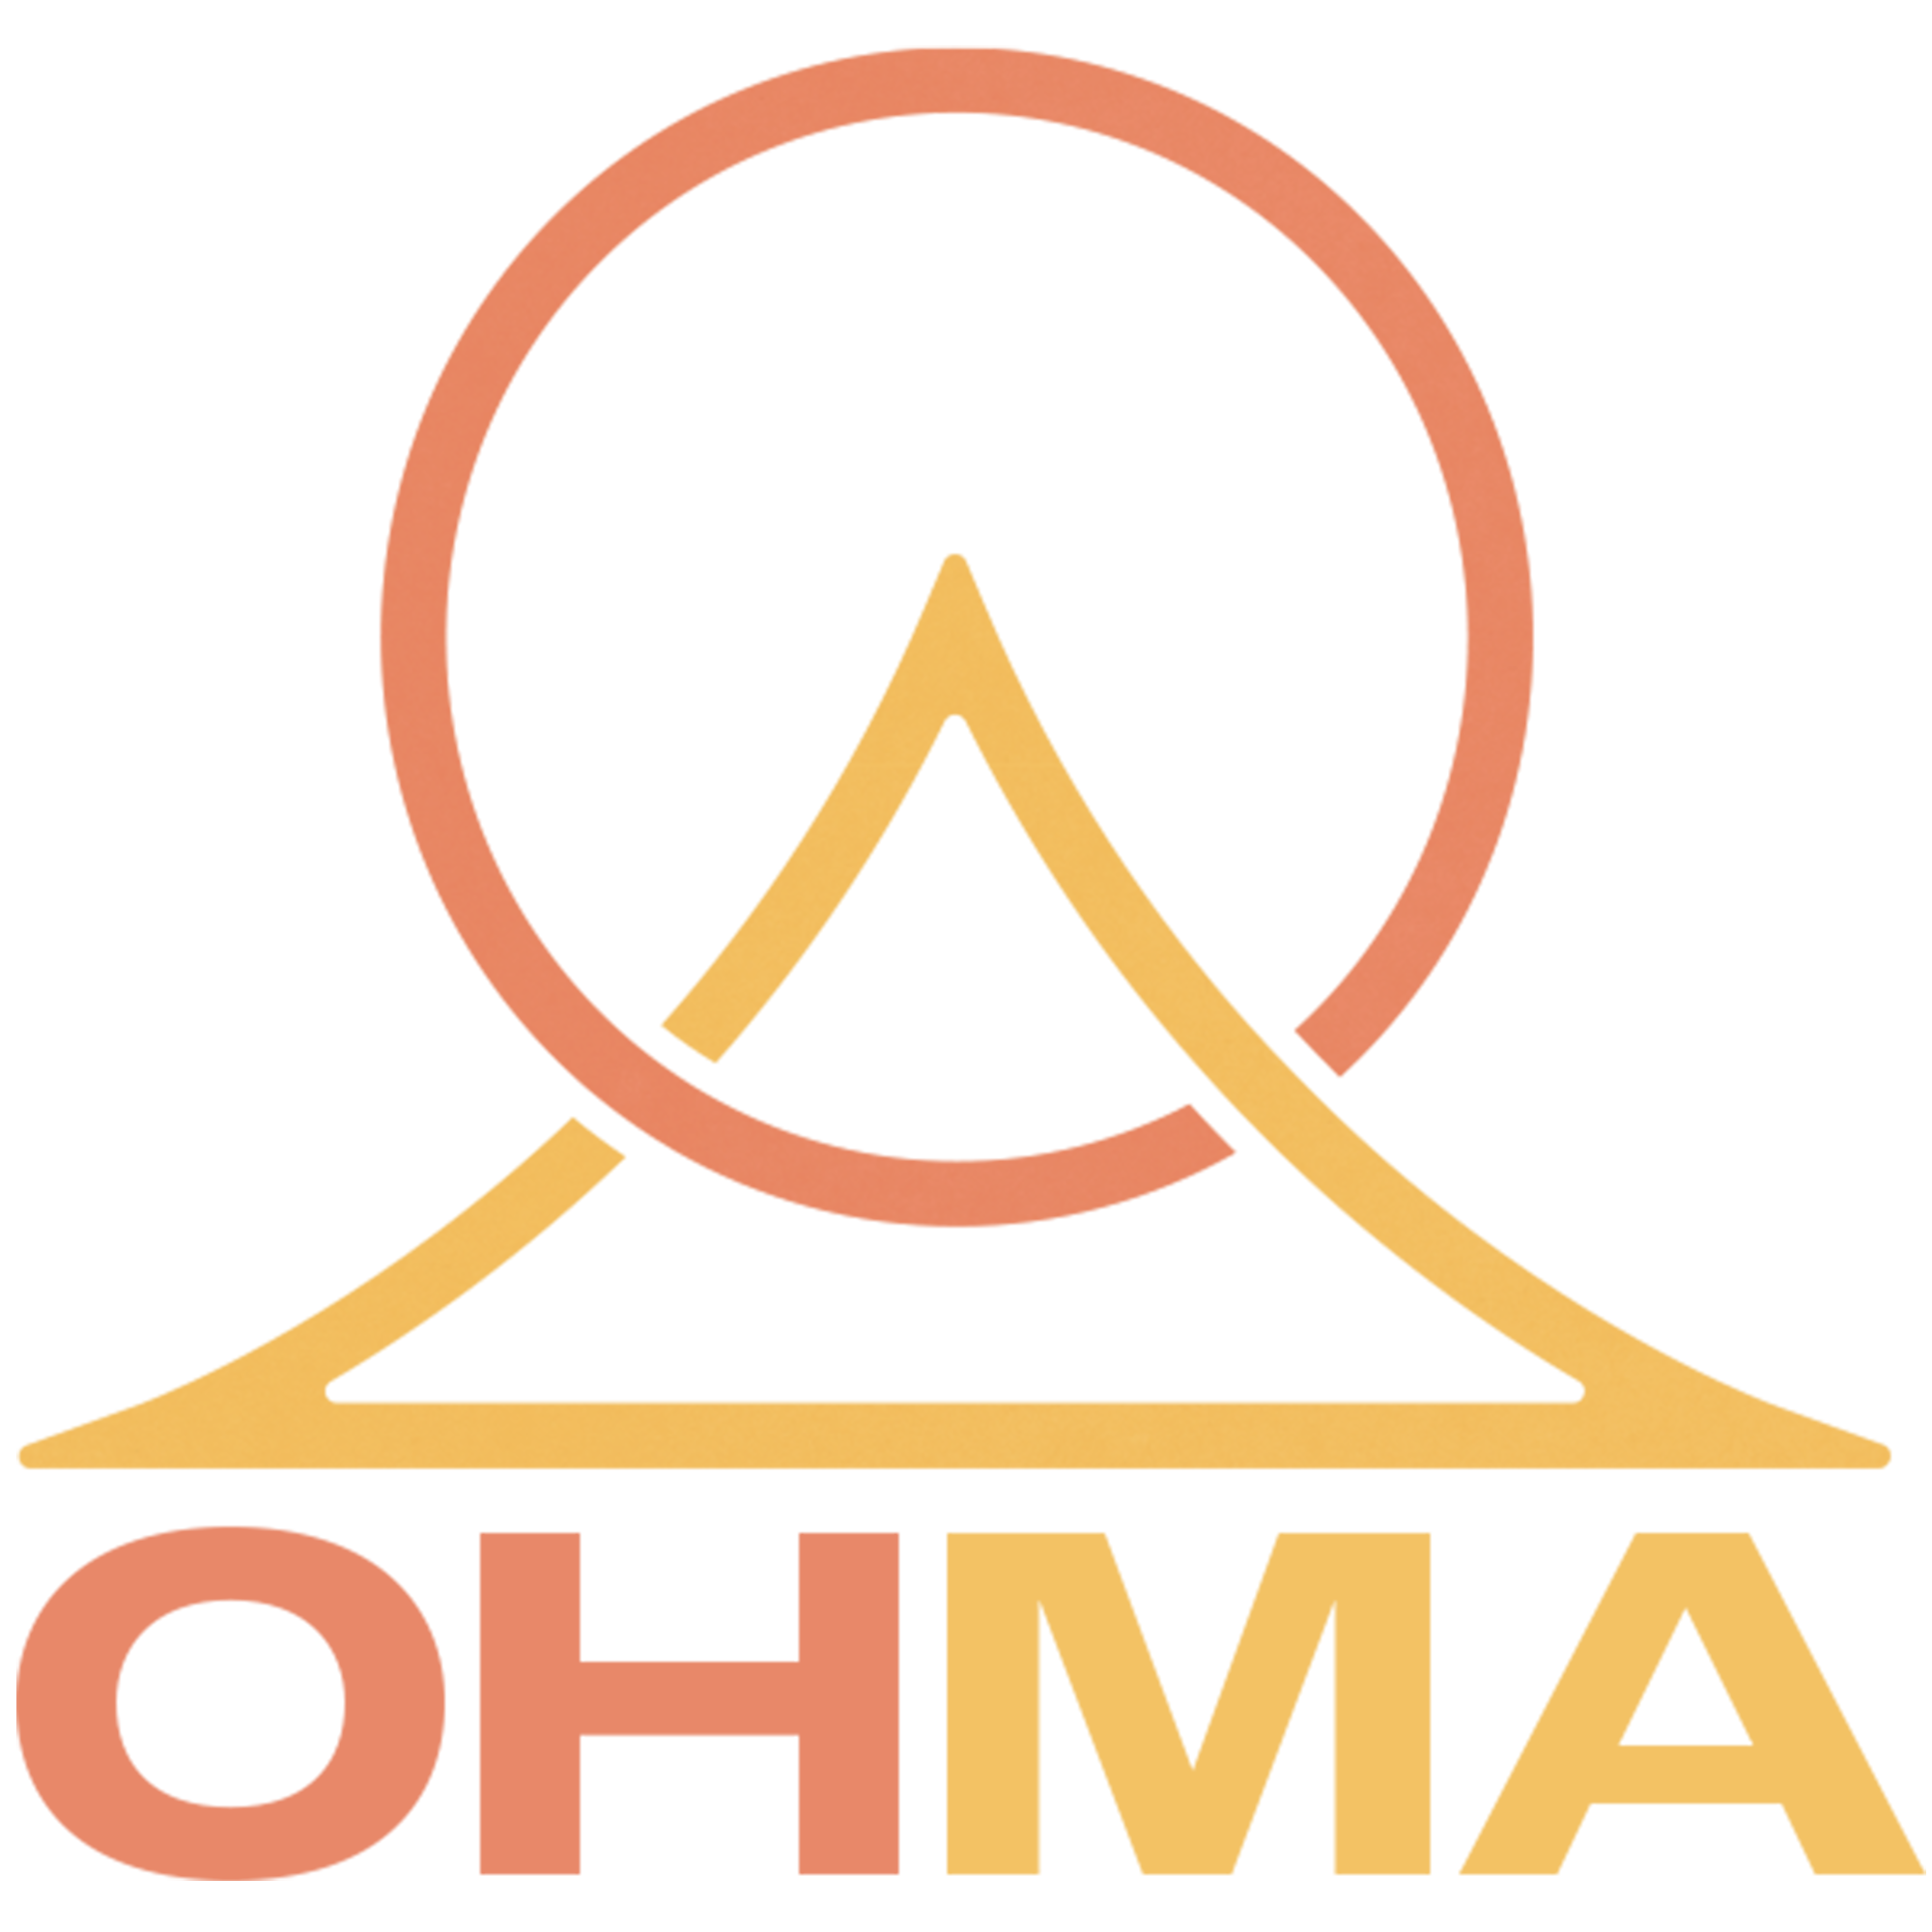 Ohma Condenser